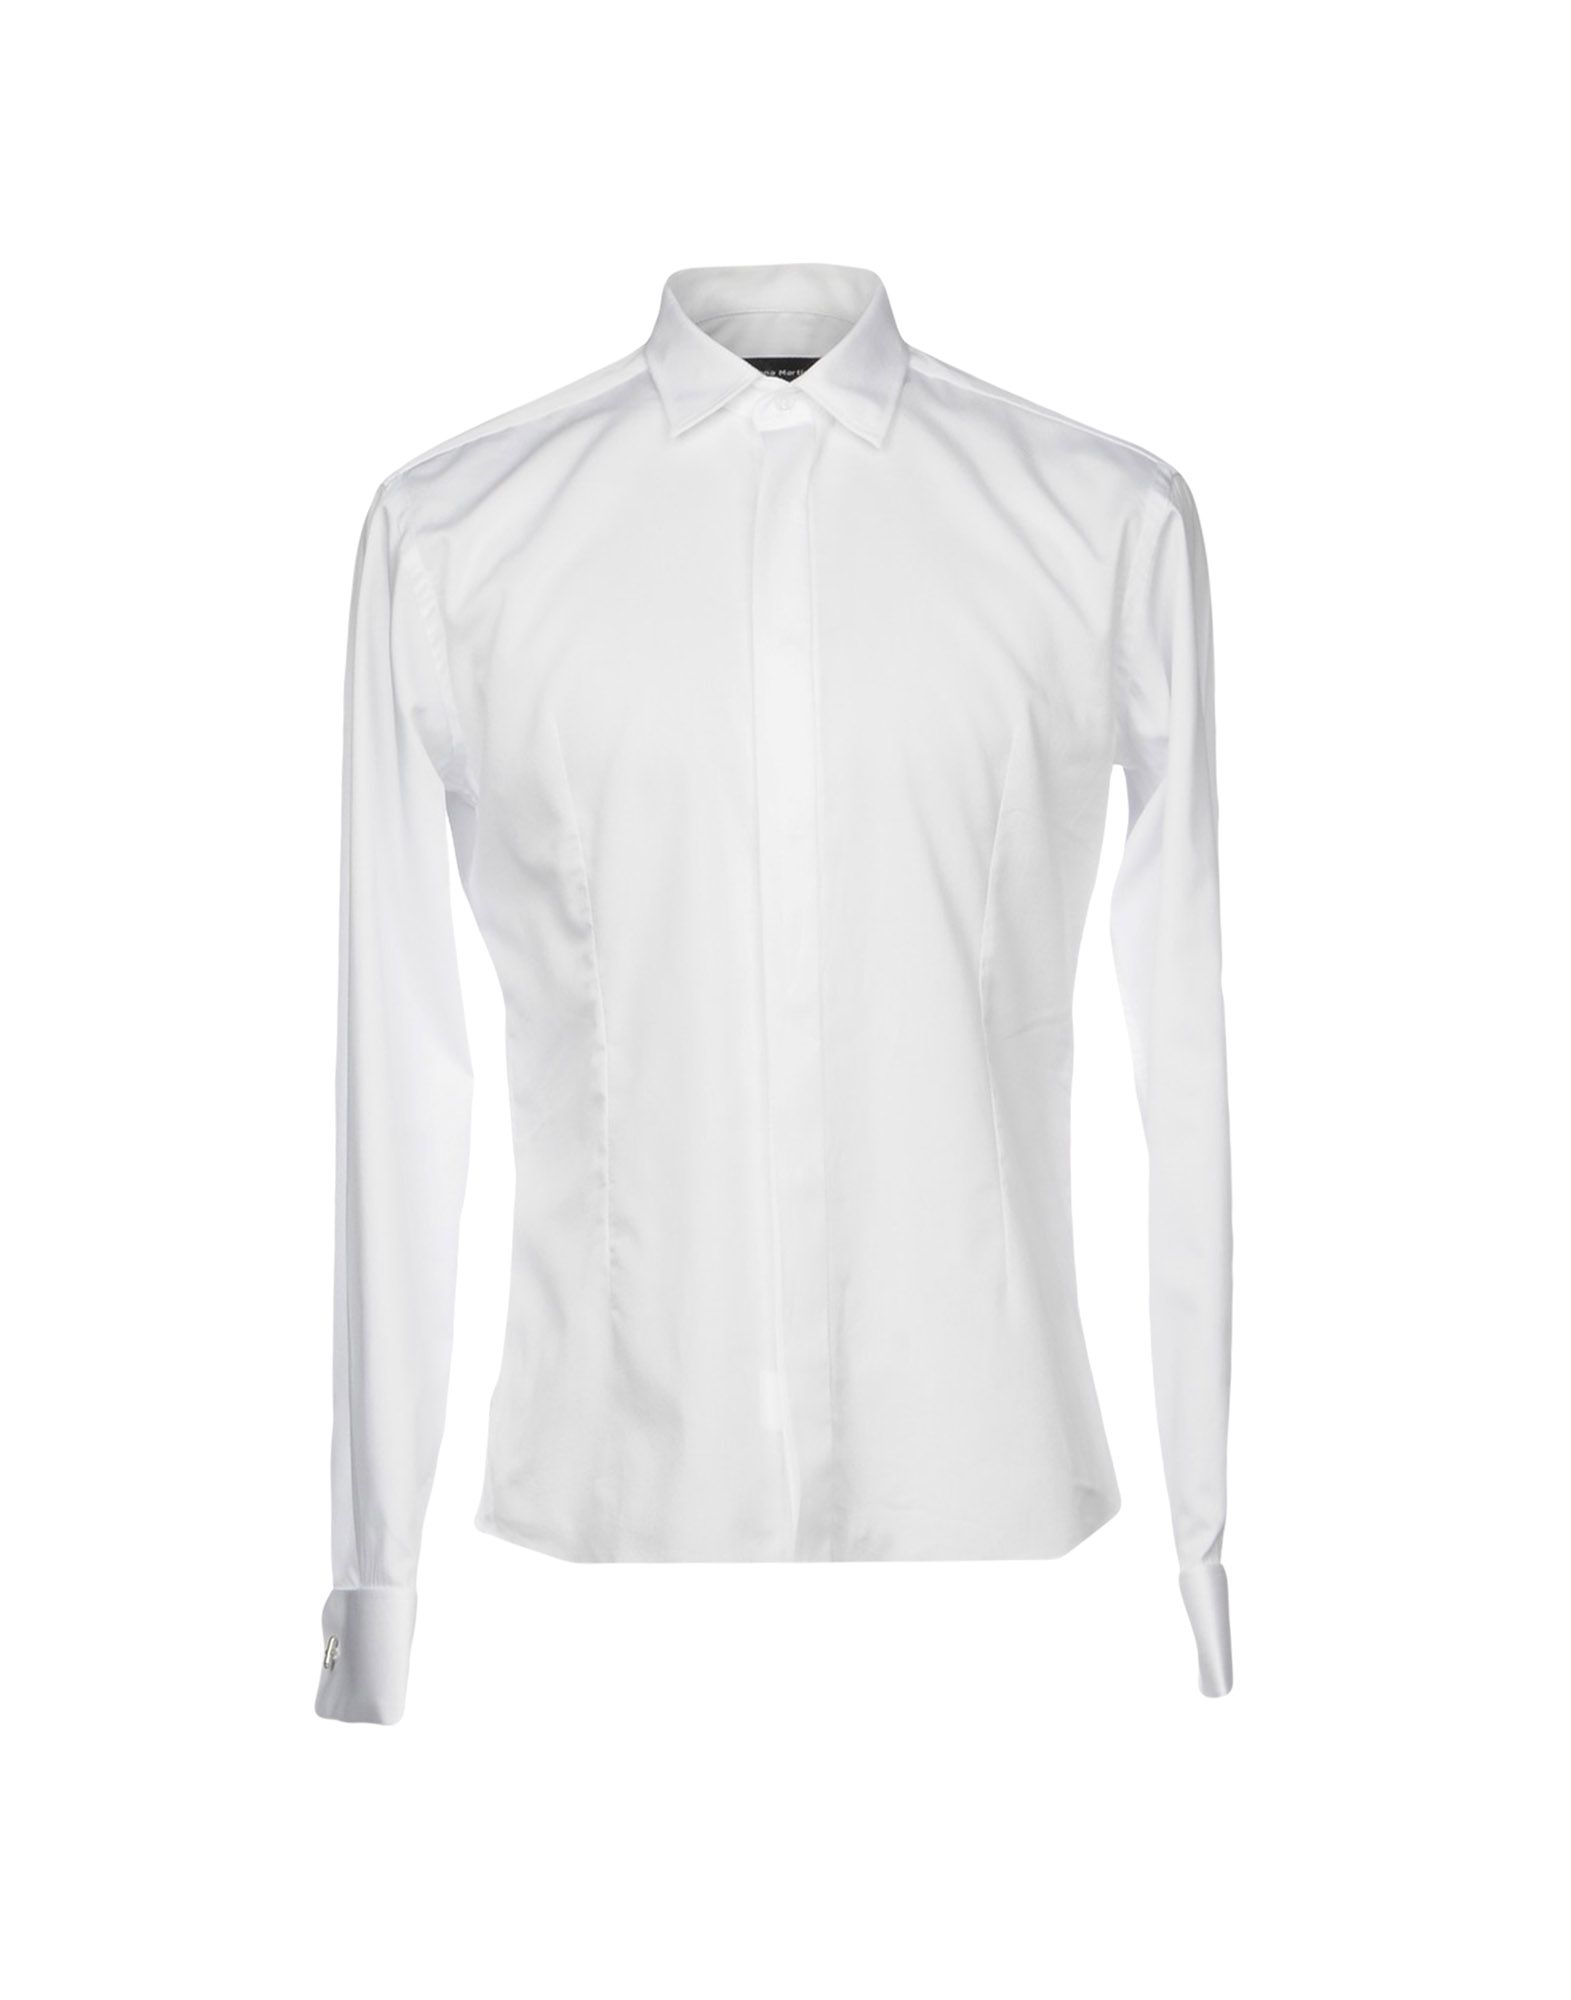 《送料無料》SIMONA MARTINI メンズ シャツ ホワイト XL コットン 100%